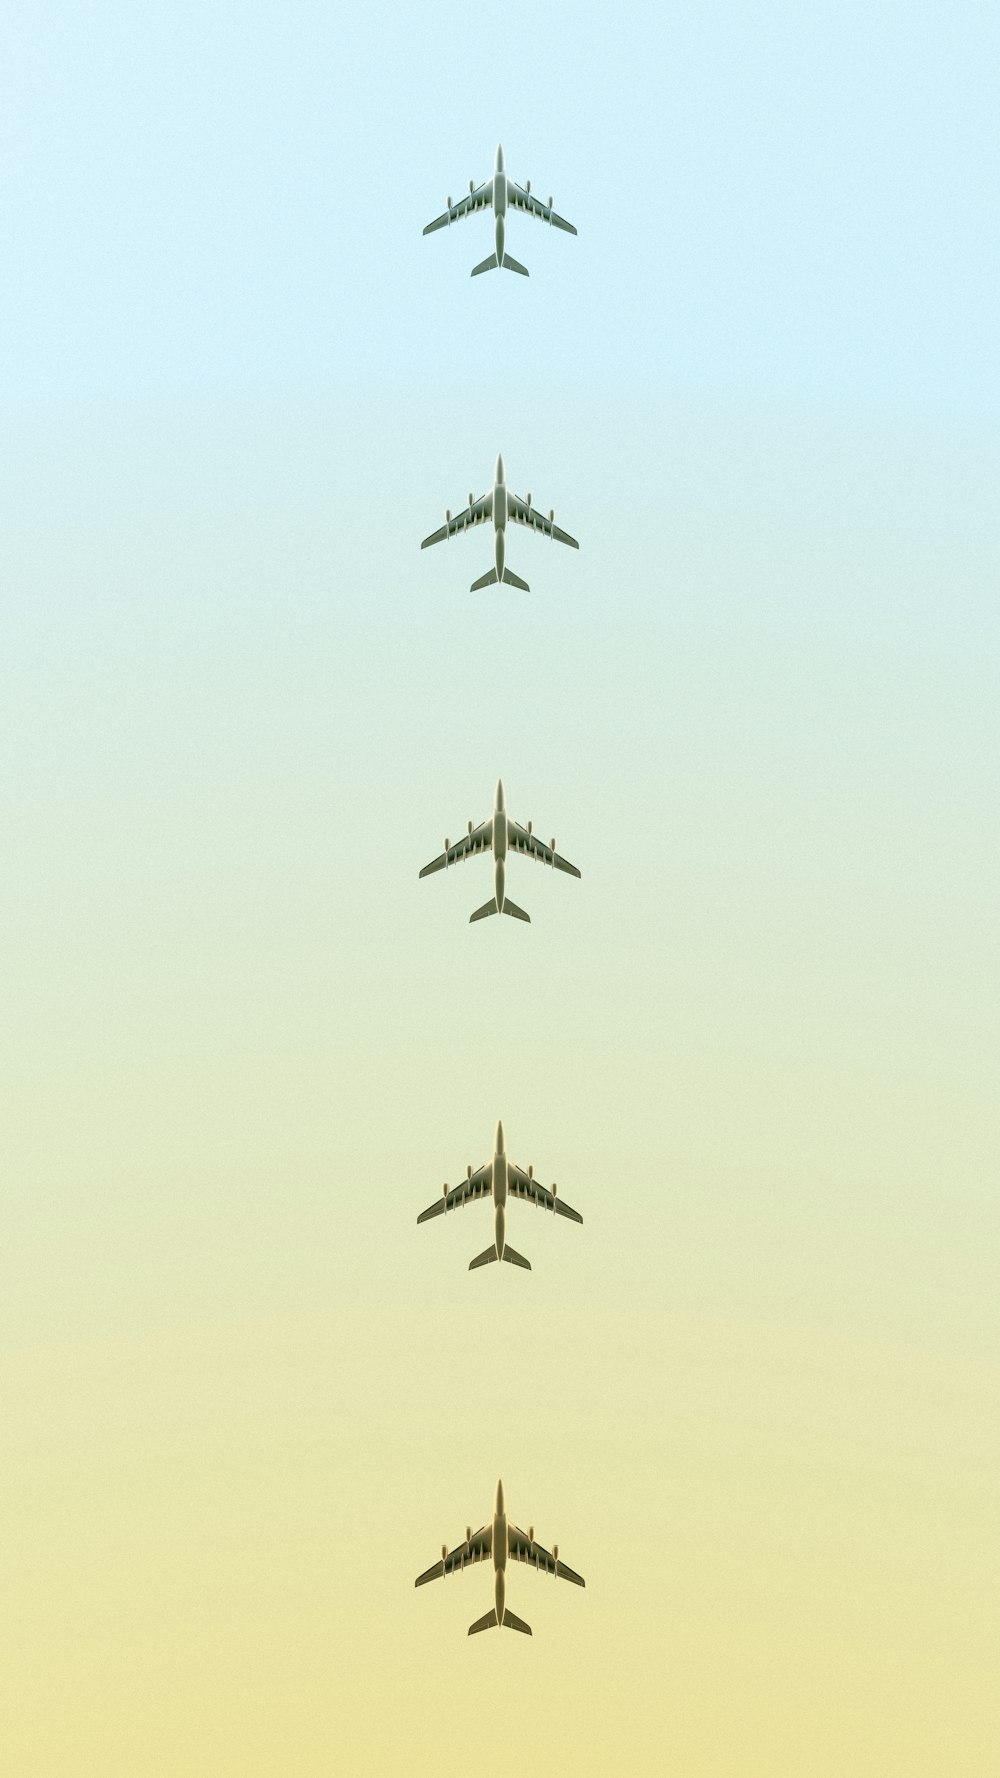 un groupe d’avions volant dans le ciel